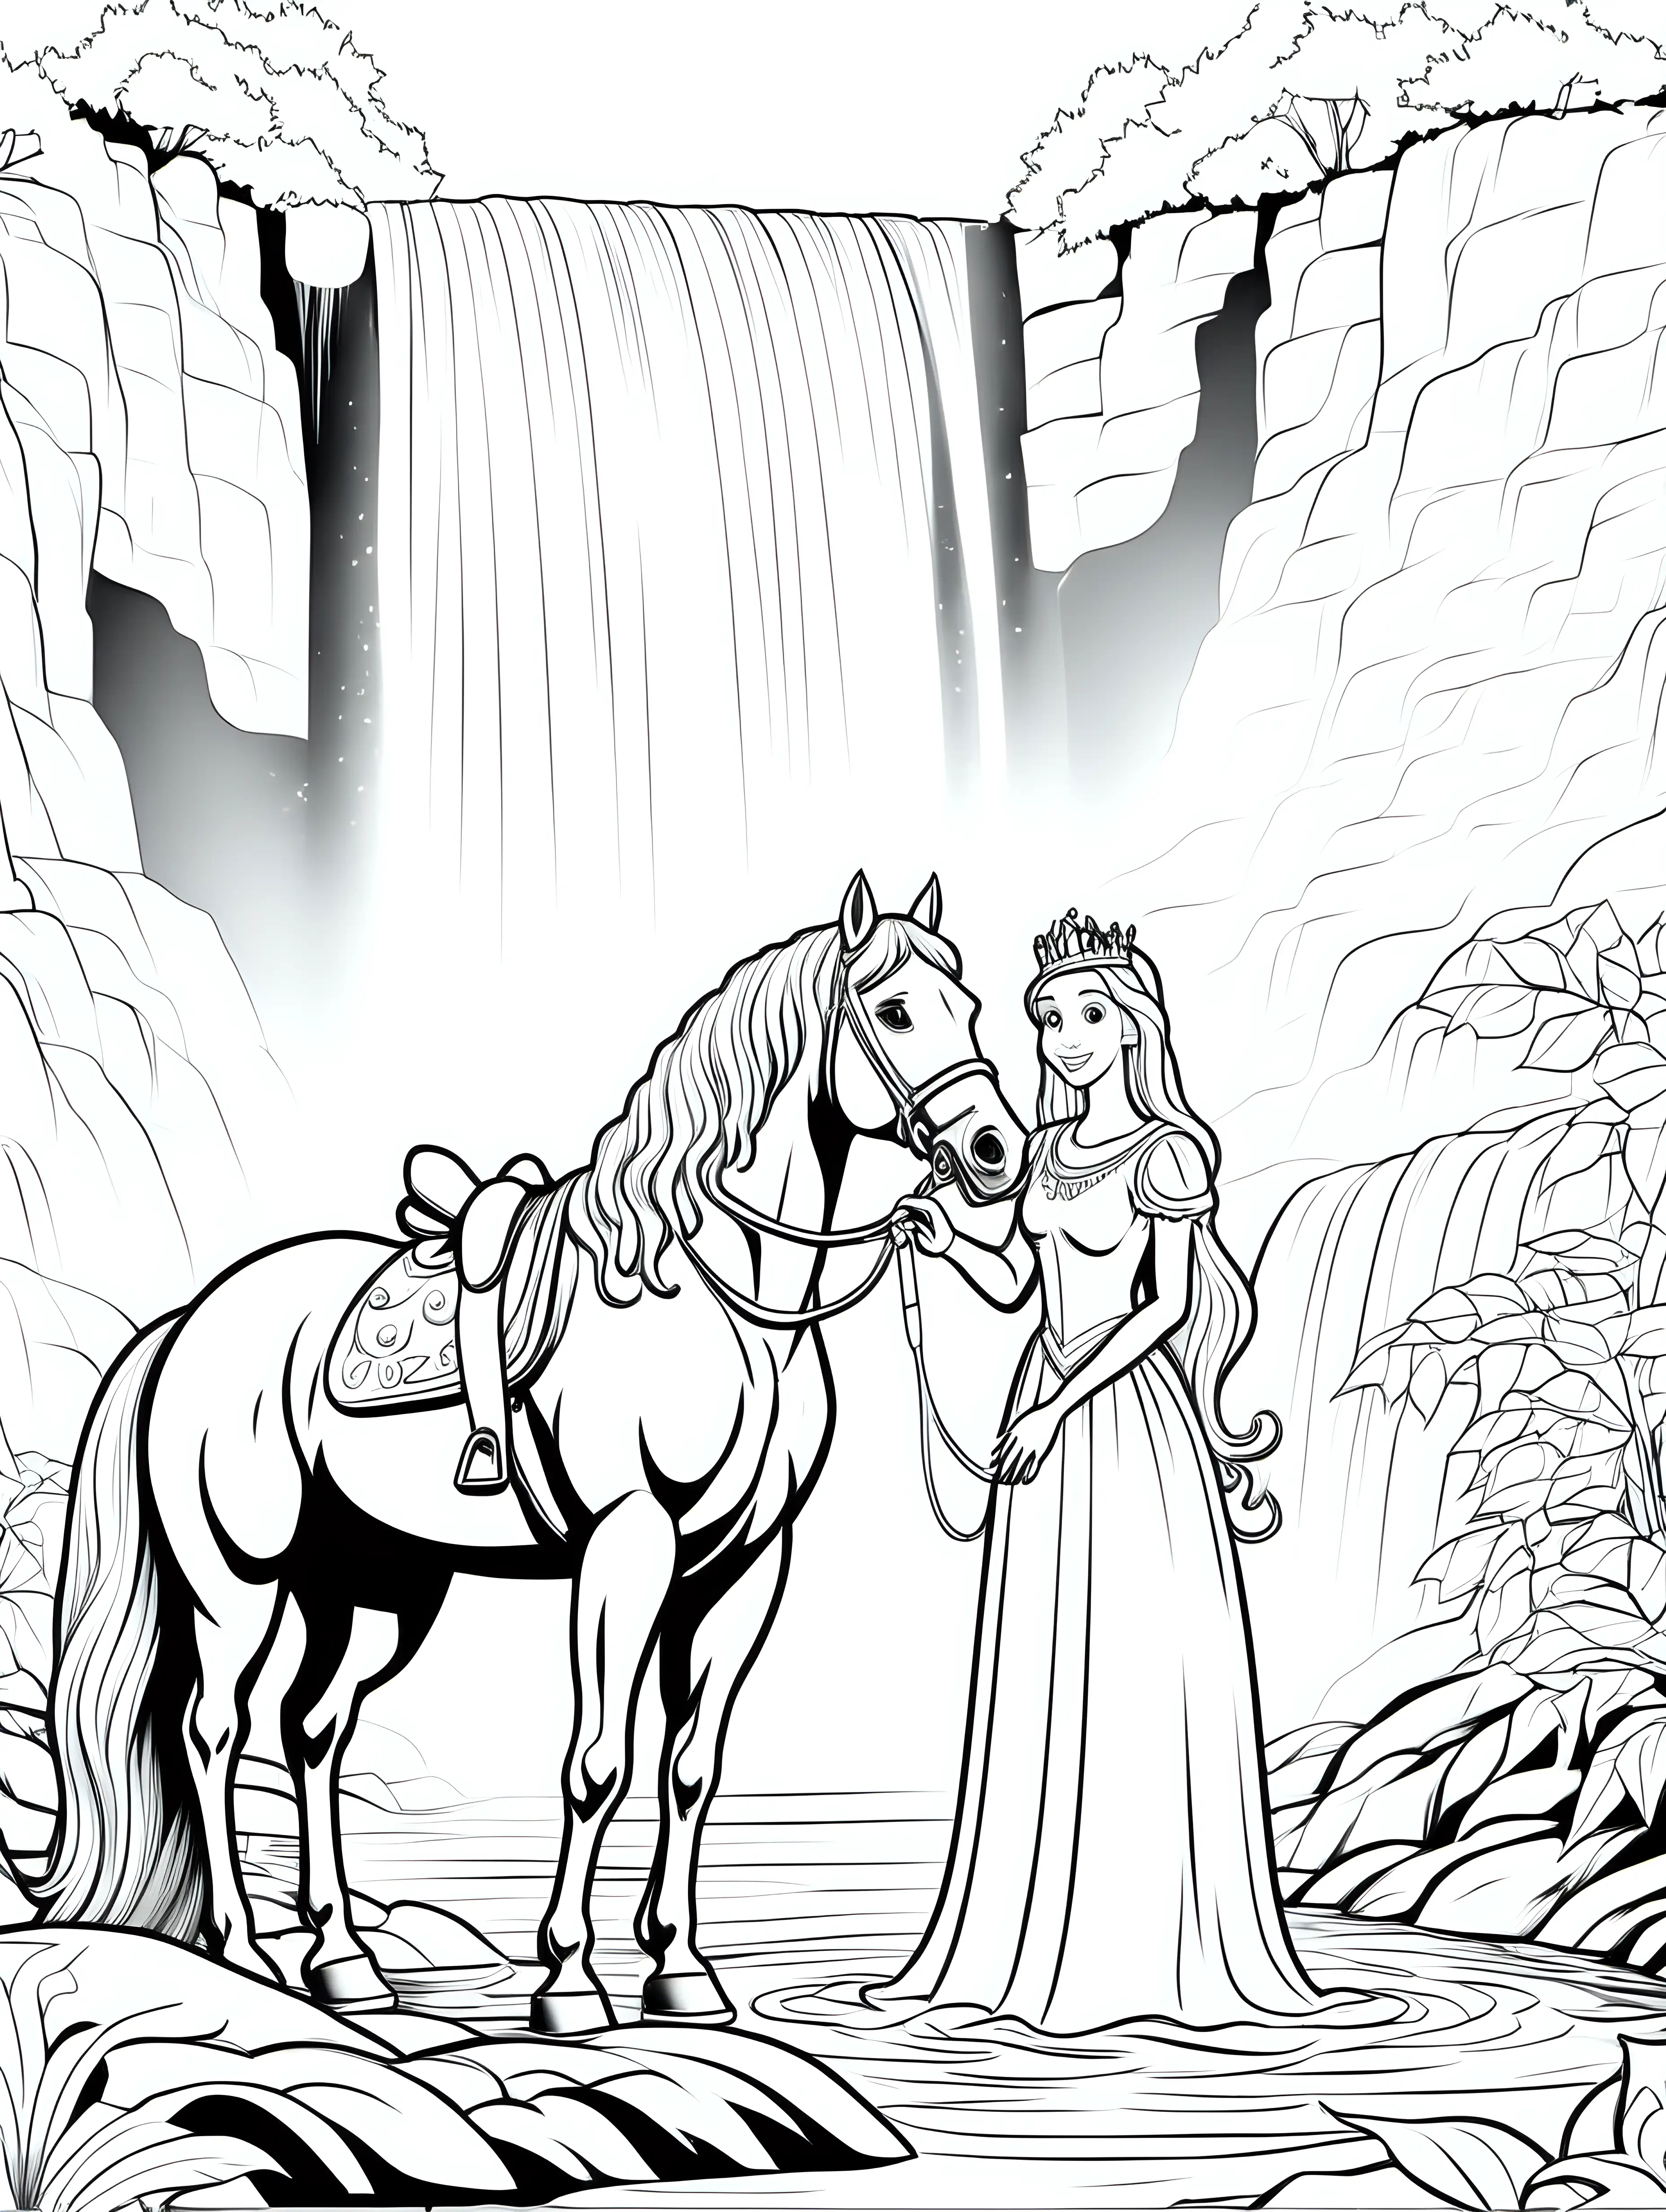 eine Prinzessin steht neben ihrem Pferd an einem Wasserfall - coloring page for kids, white background